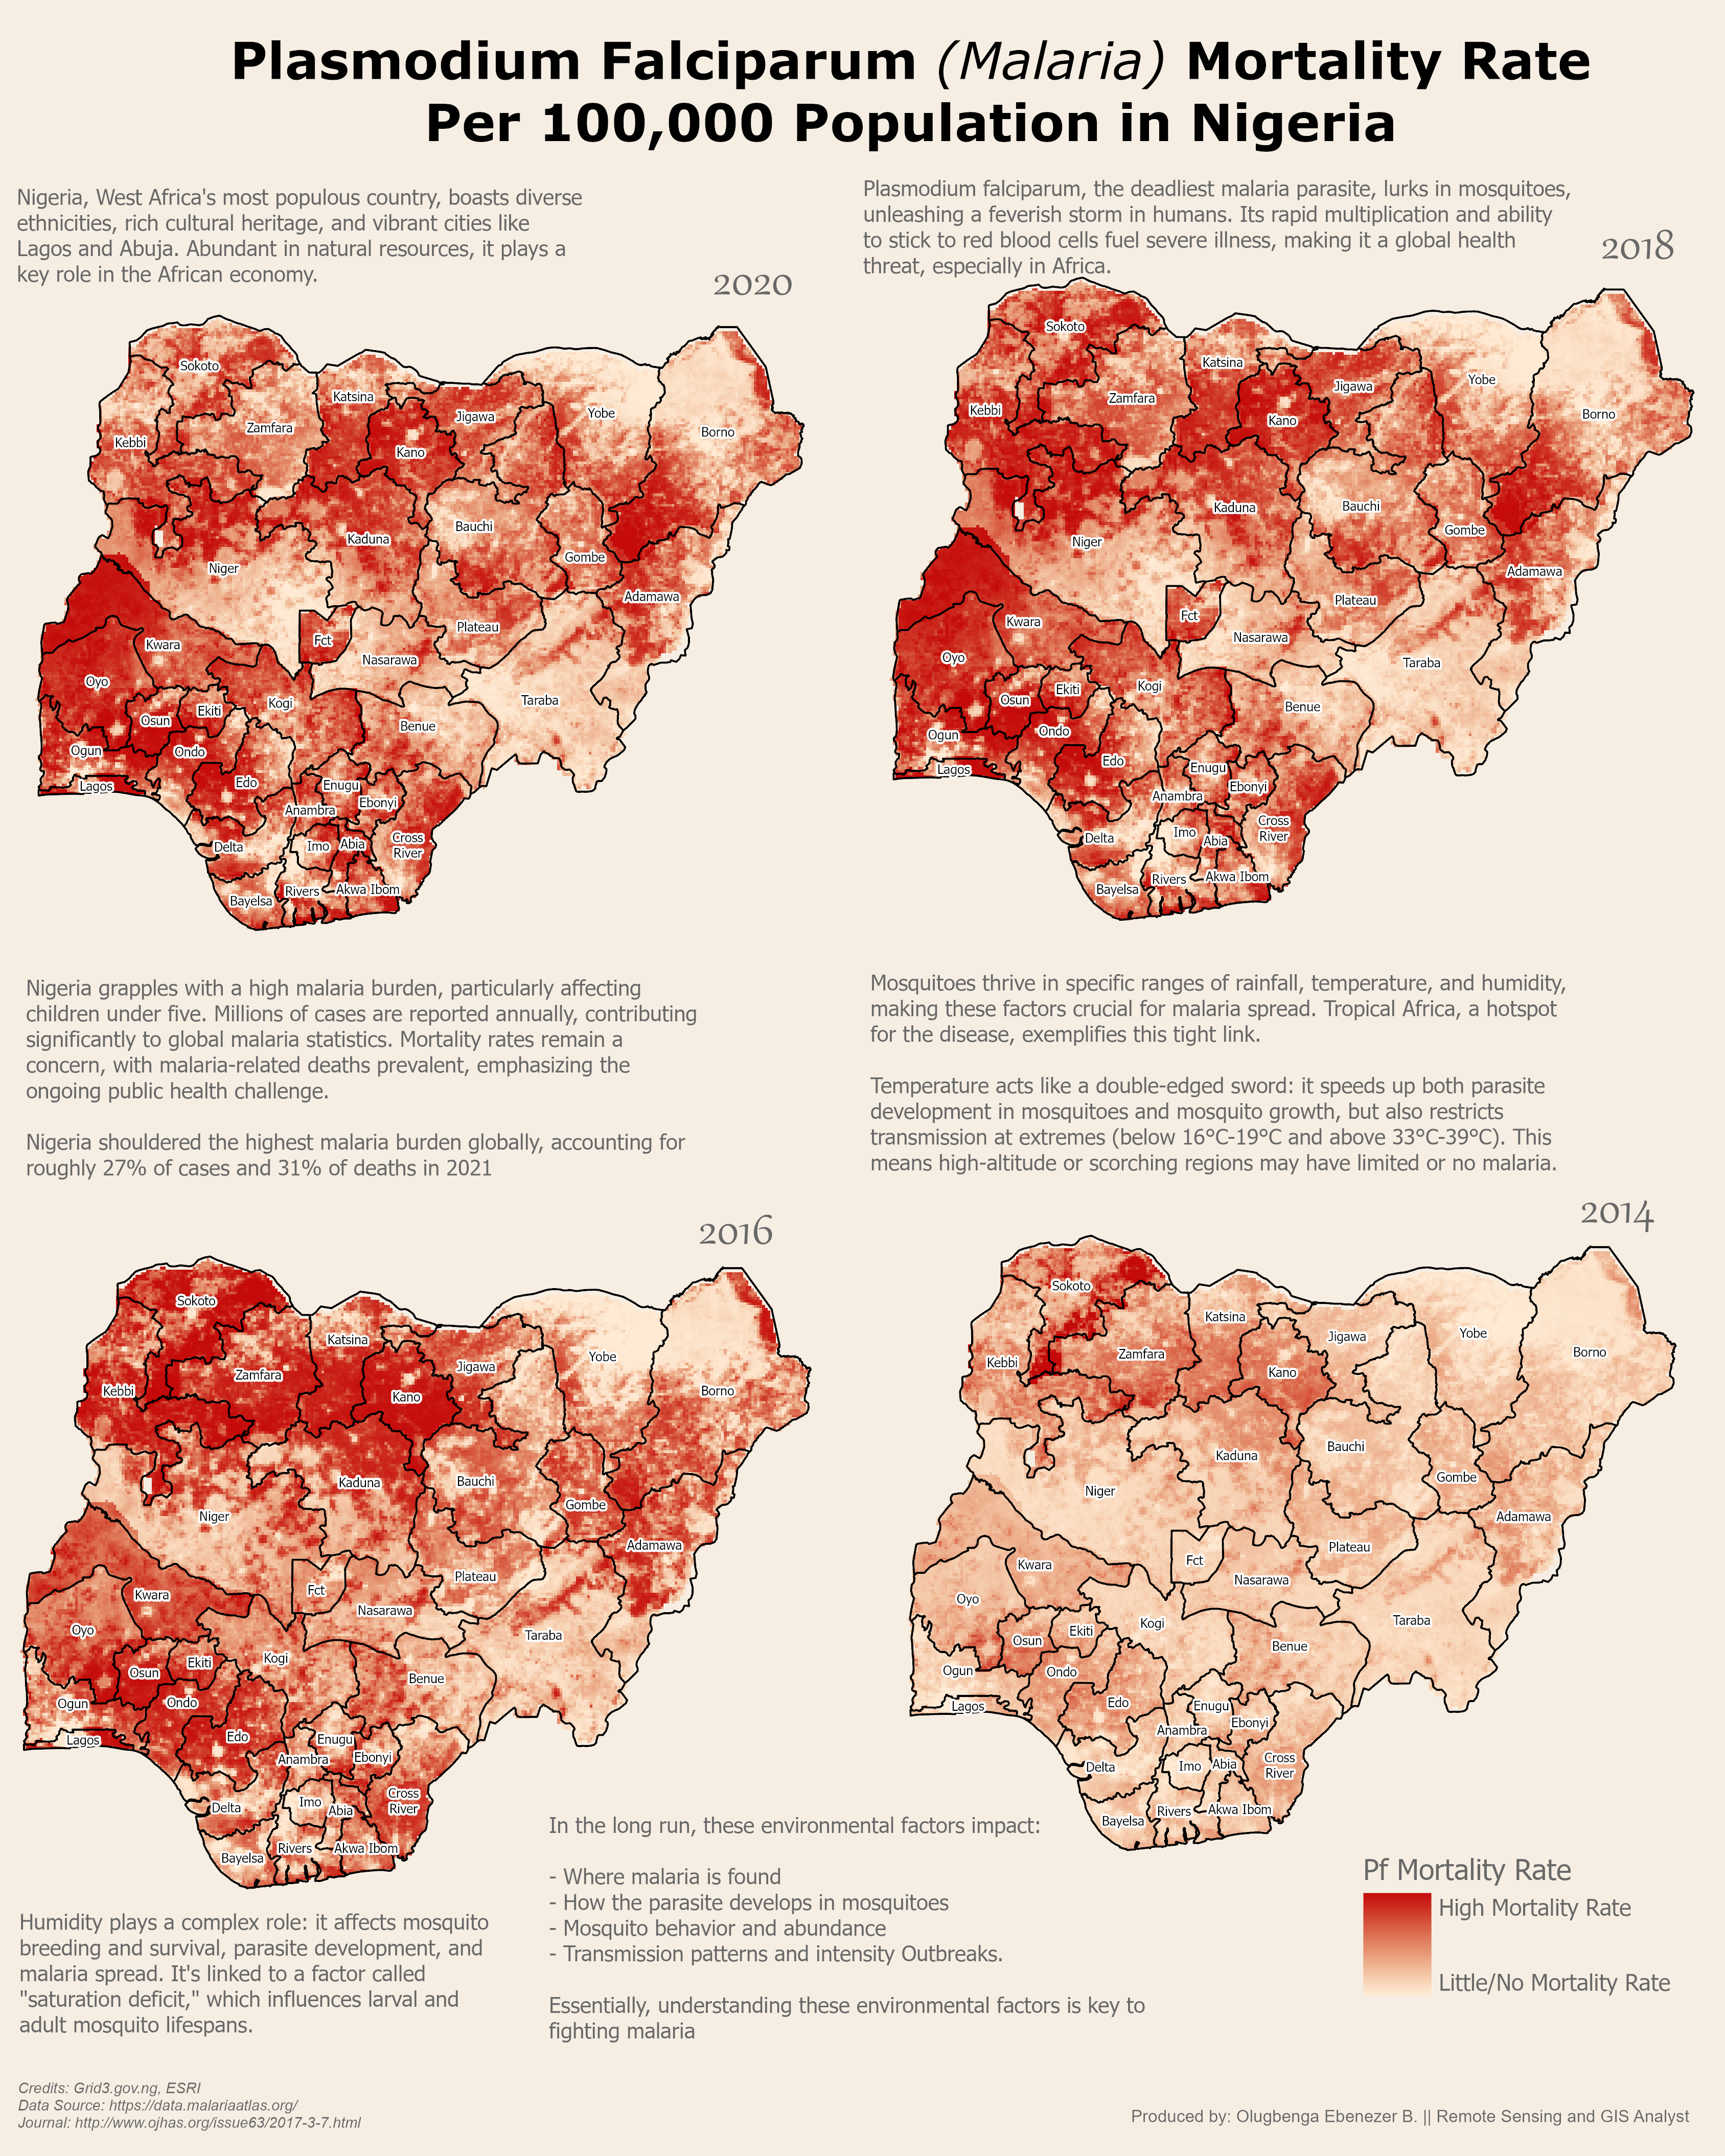 Malaria Mortality Rate in Nigeria Map